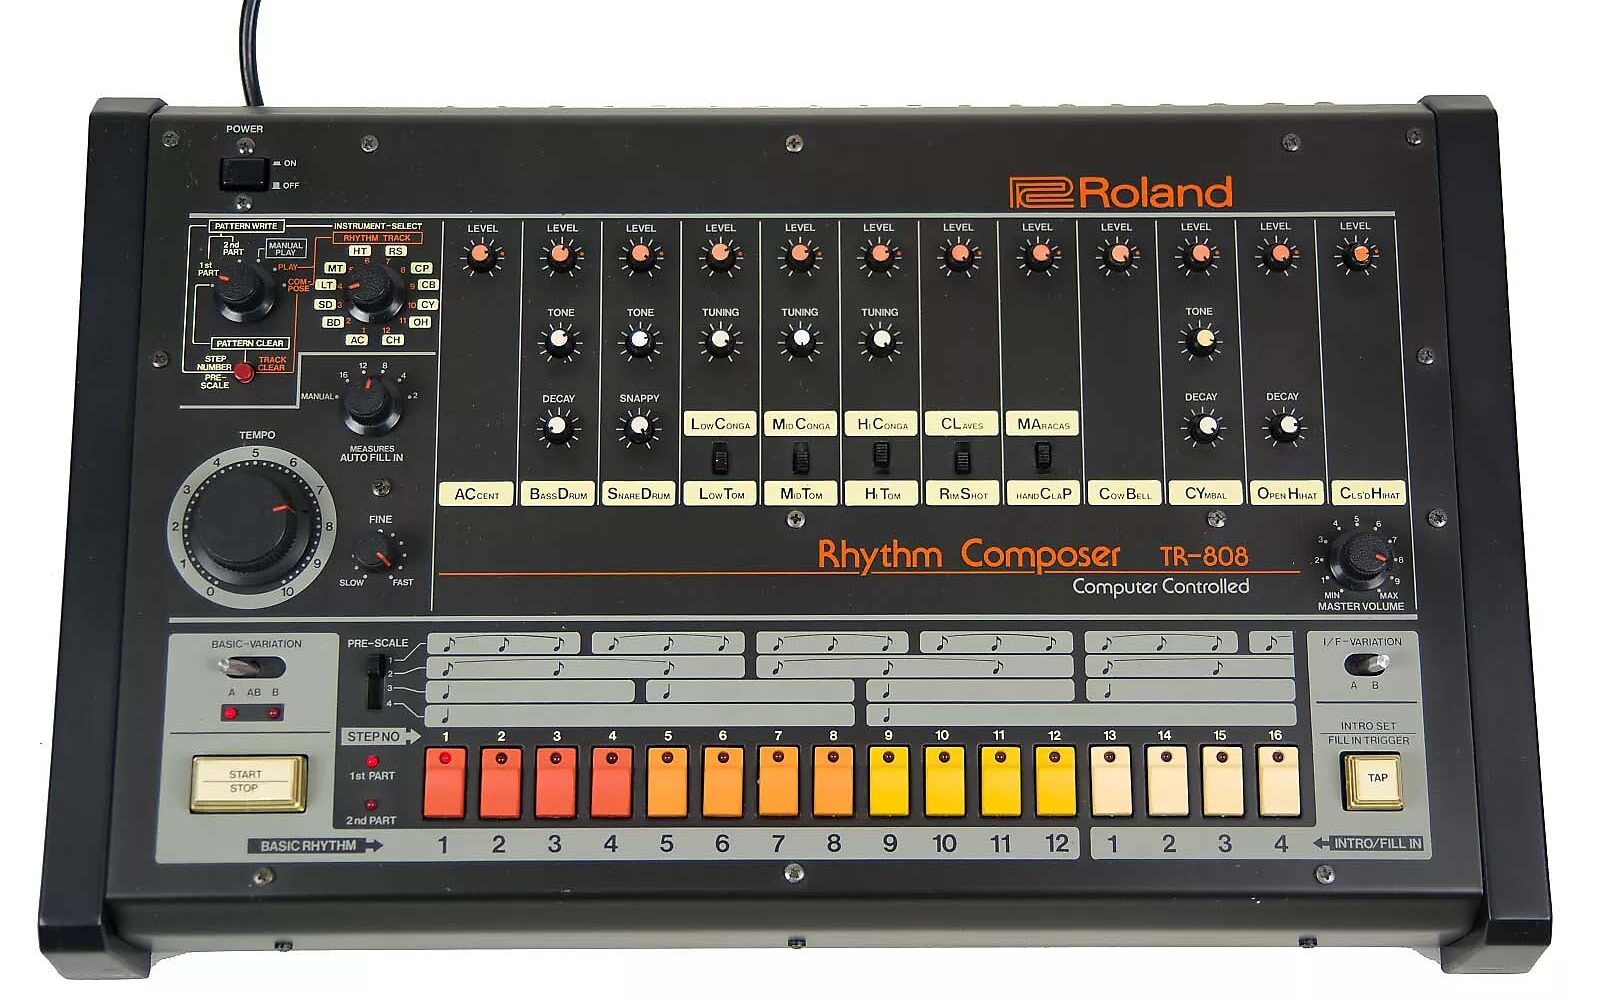 The legendary Roland TR-808